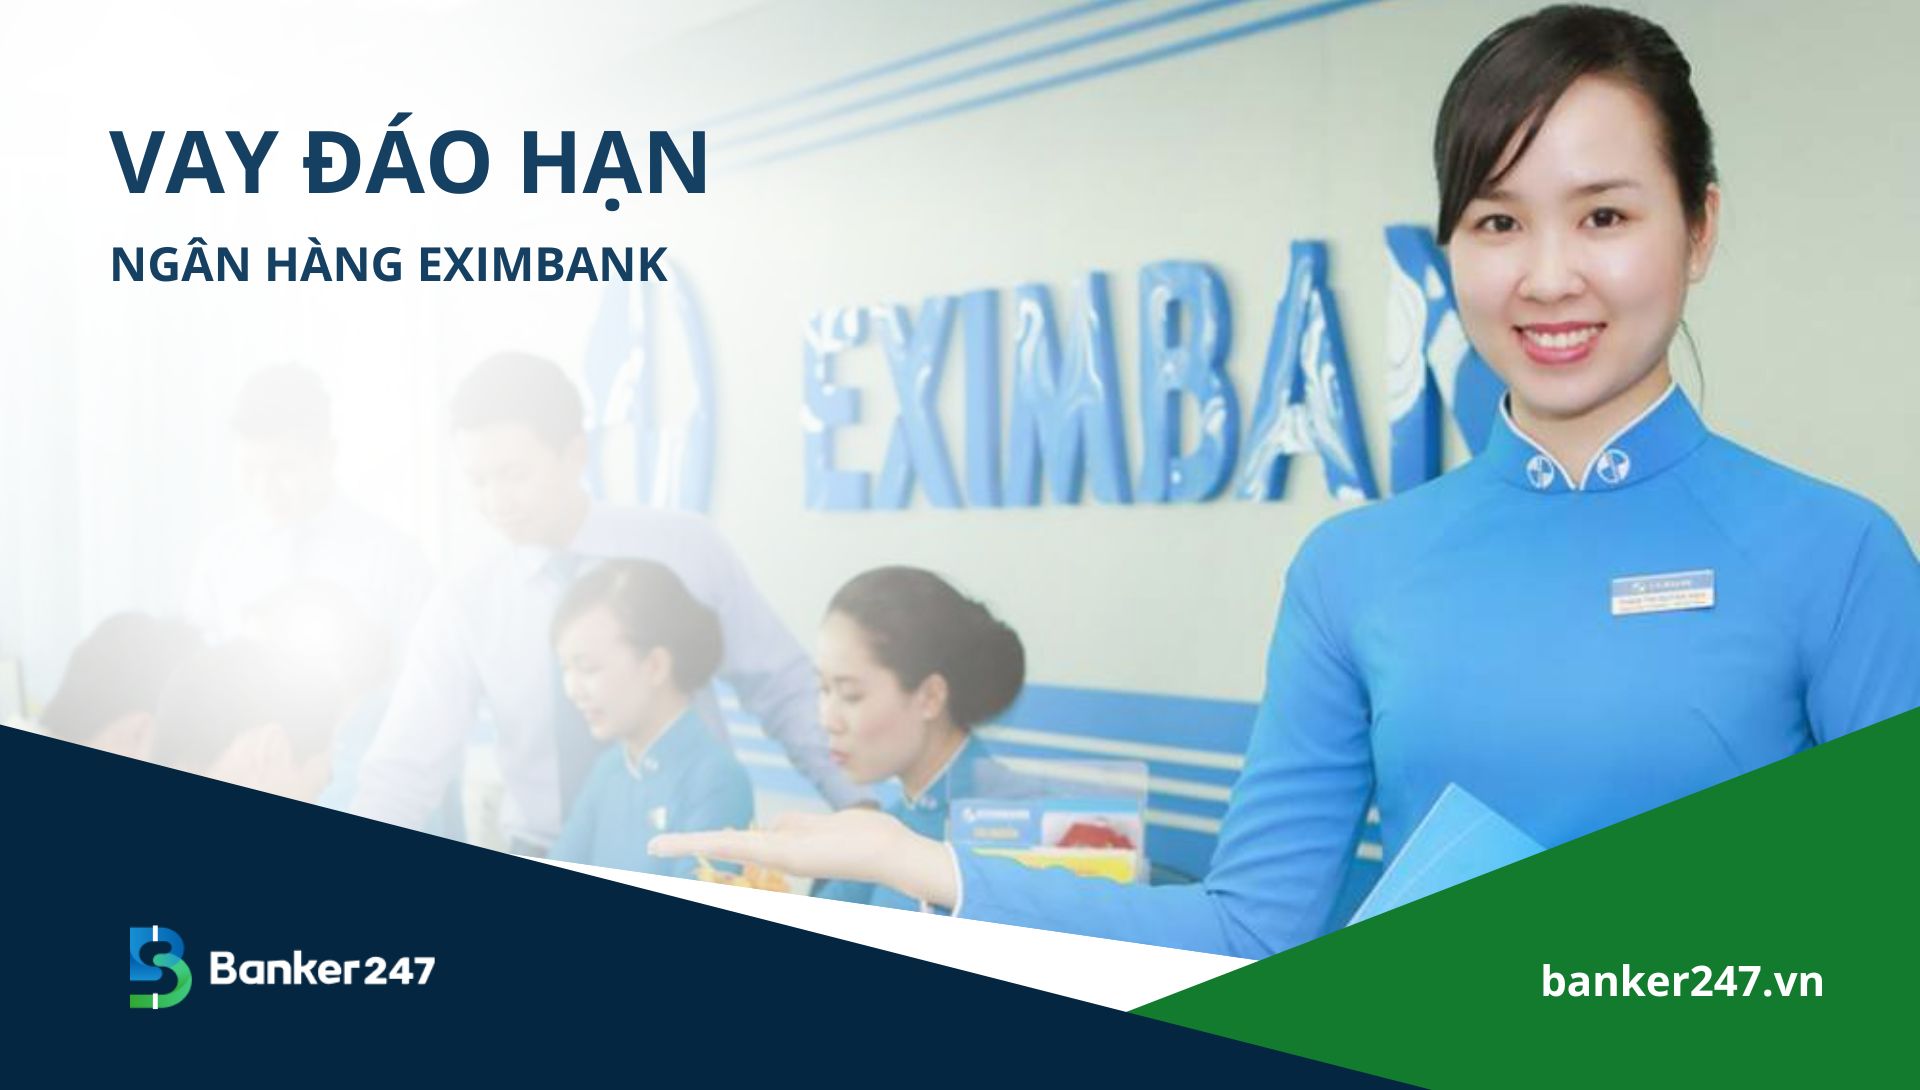 Vay đáo hạn ngân hàng Eximbank